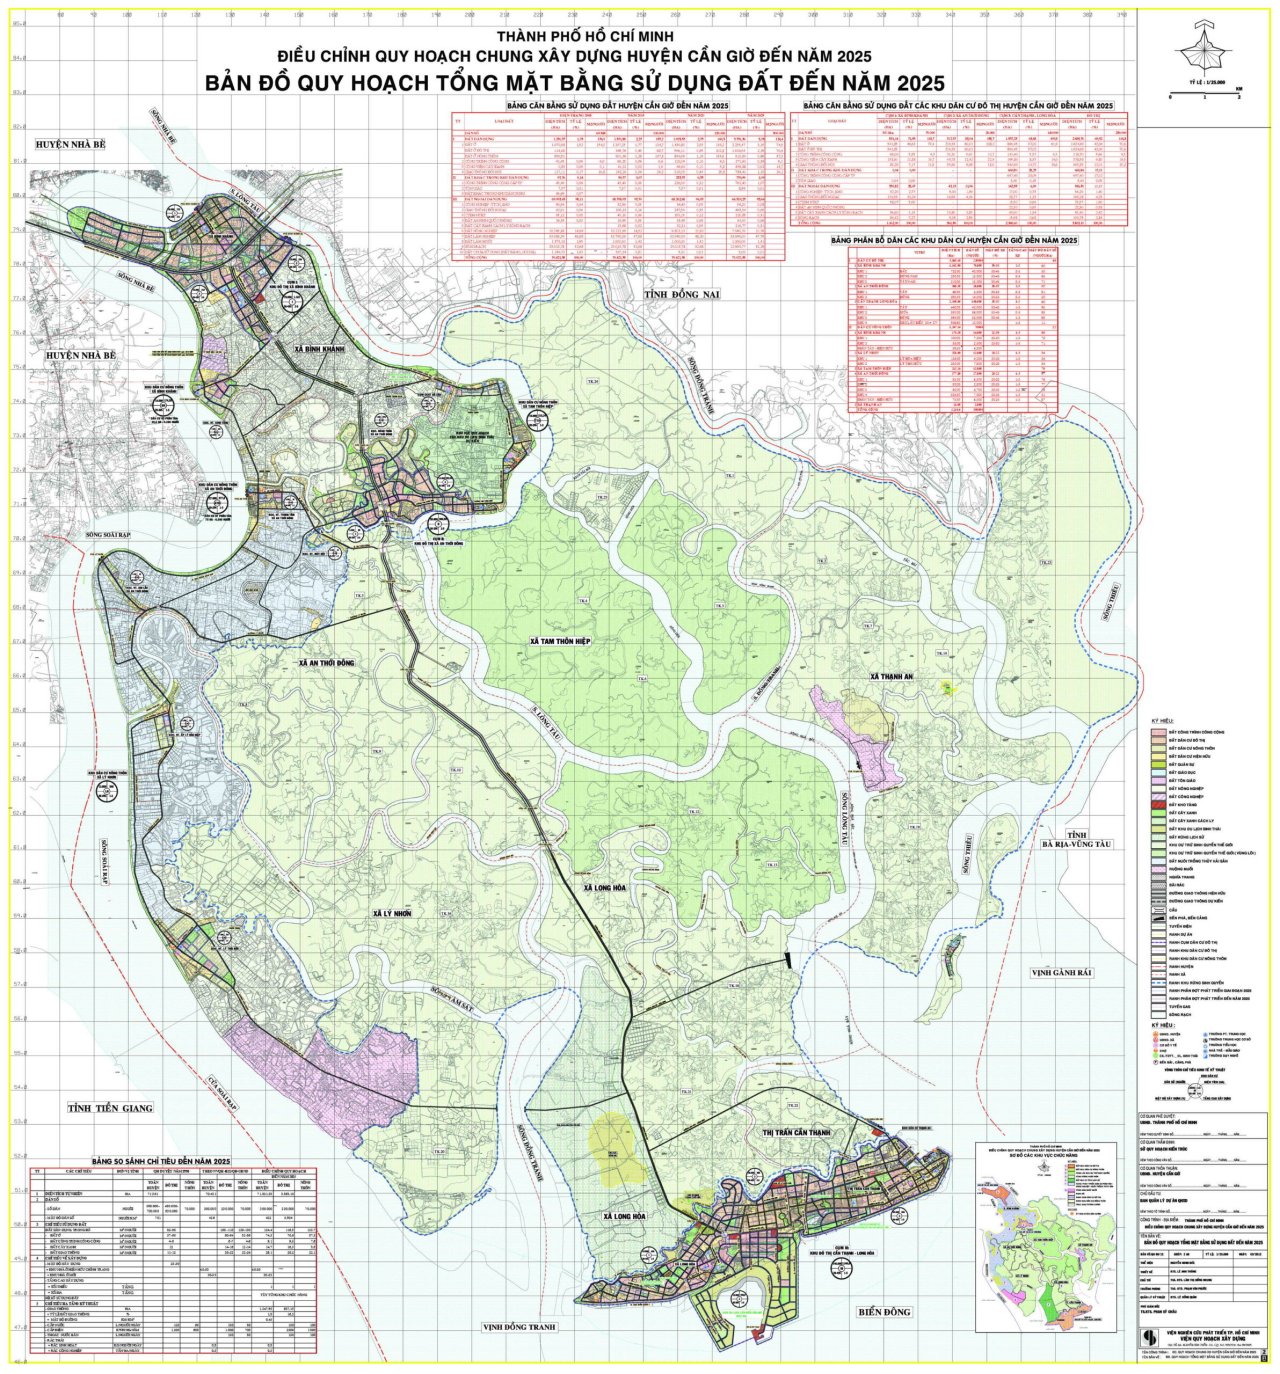 Bản đồ quy hoạch sử dụng đất huyện Cần Giờ đến 2025